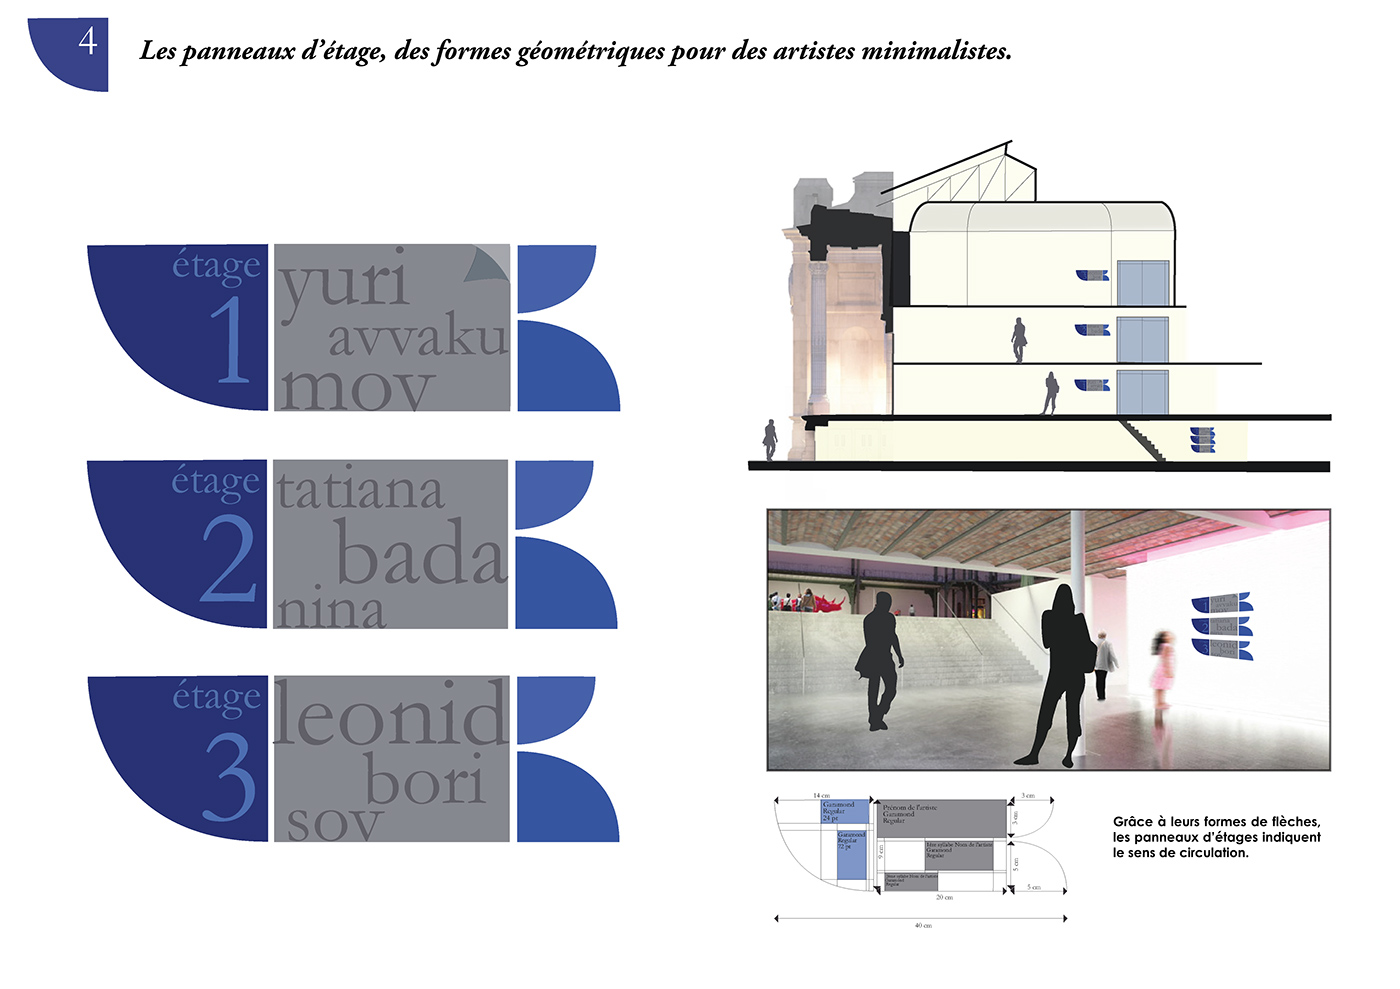 Grand Palais musée d'orsay Orsay Museum Signage scenography museography russian art art blue square Paris musée galerie Exhibition  pictogram constructivist